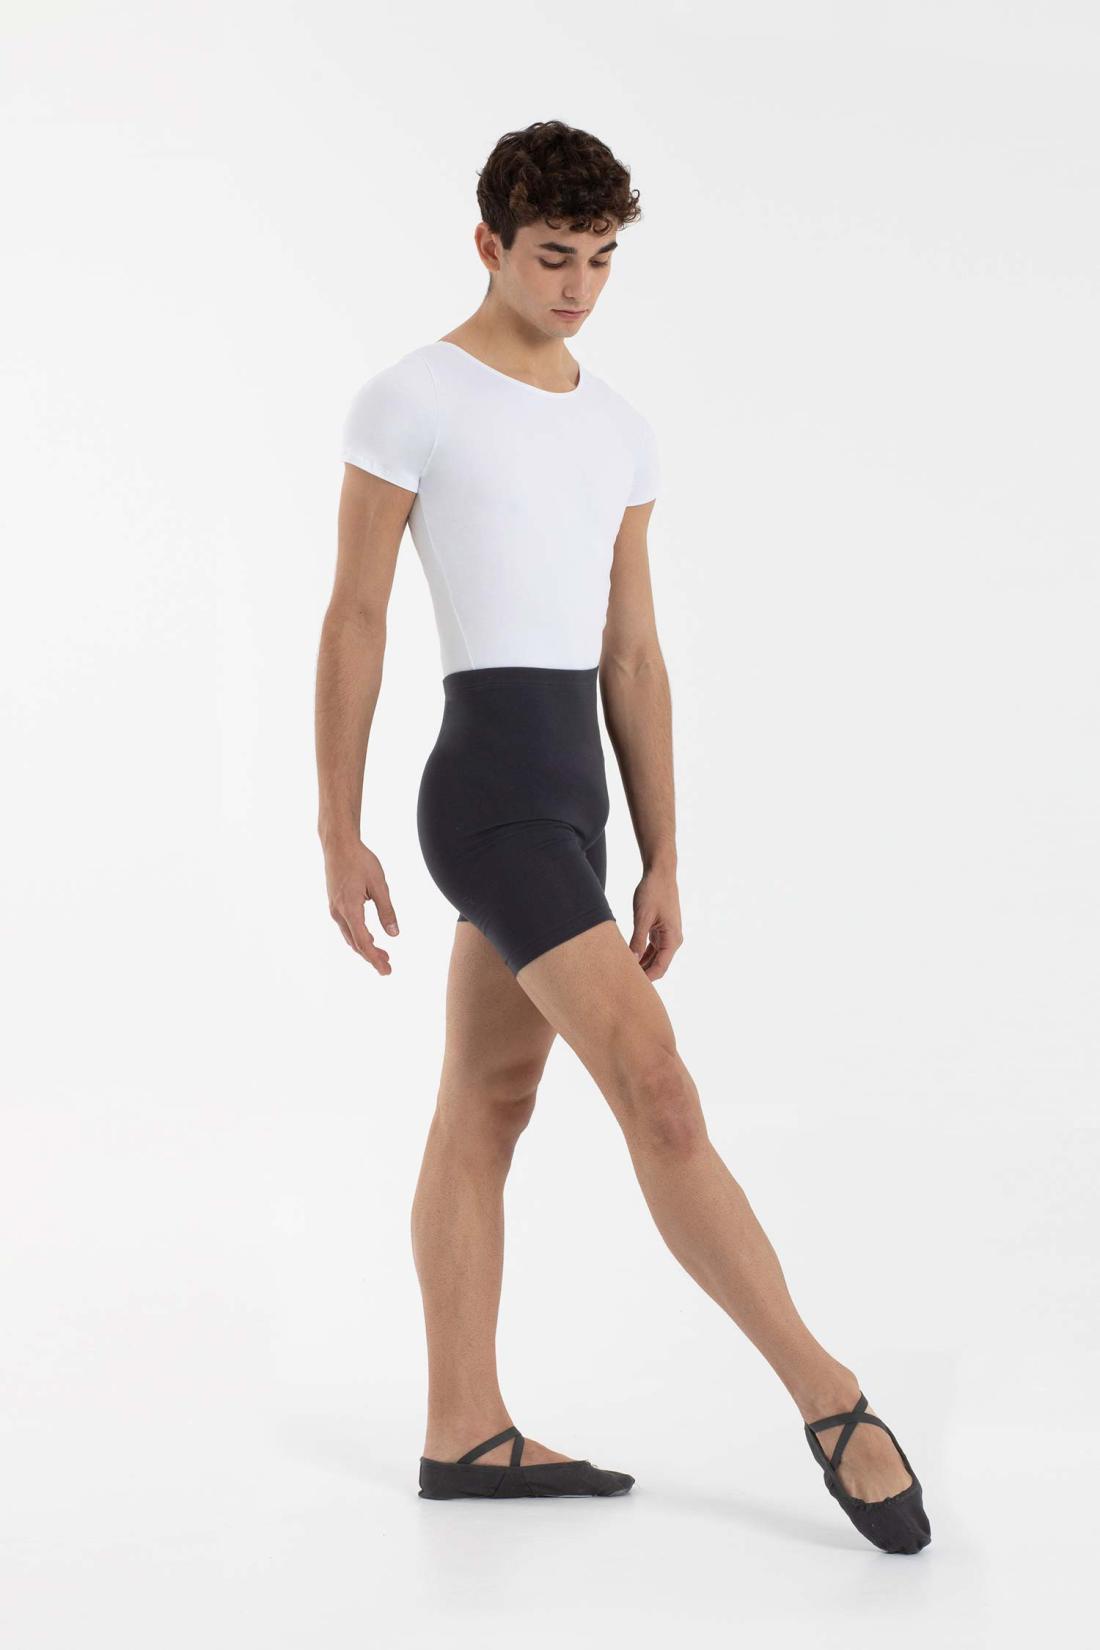 Shorts for Male Dancers in Organic Cotton Intermezzo Ballet Dance